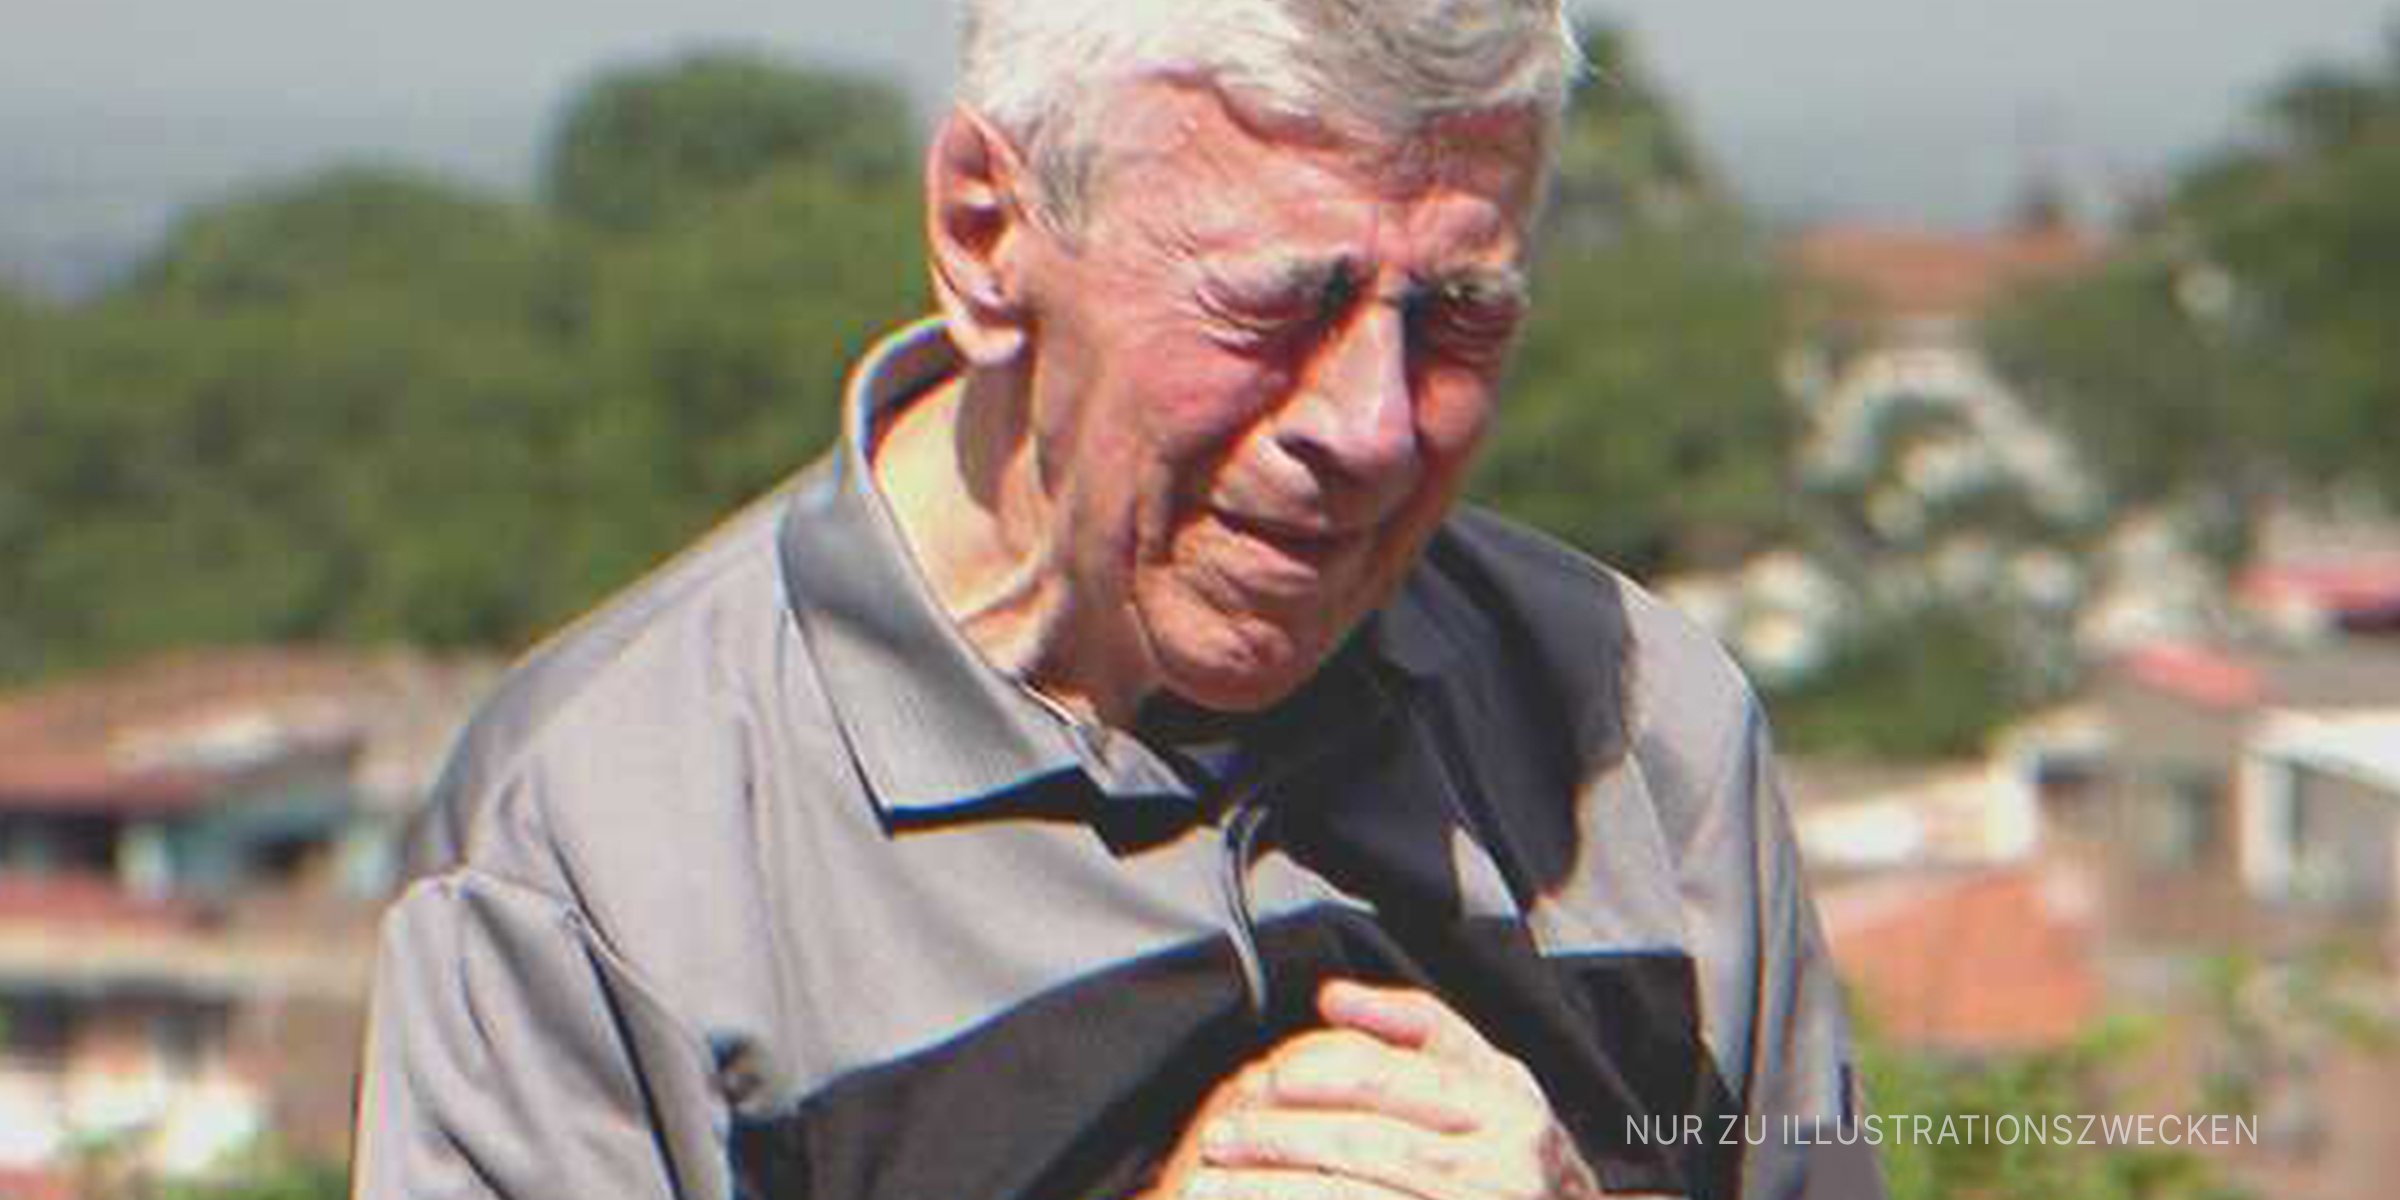 Ein alter Mann weint verzweifelt | Quelle: Shutterstock